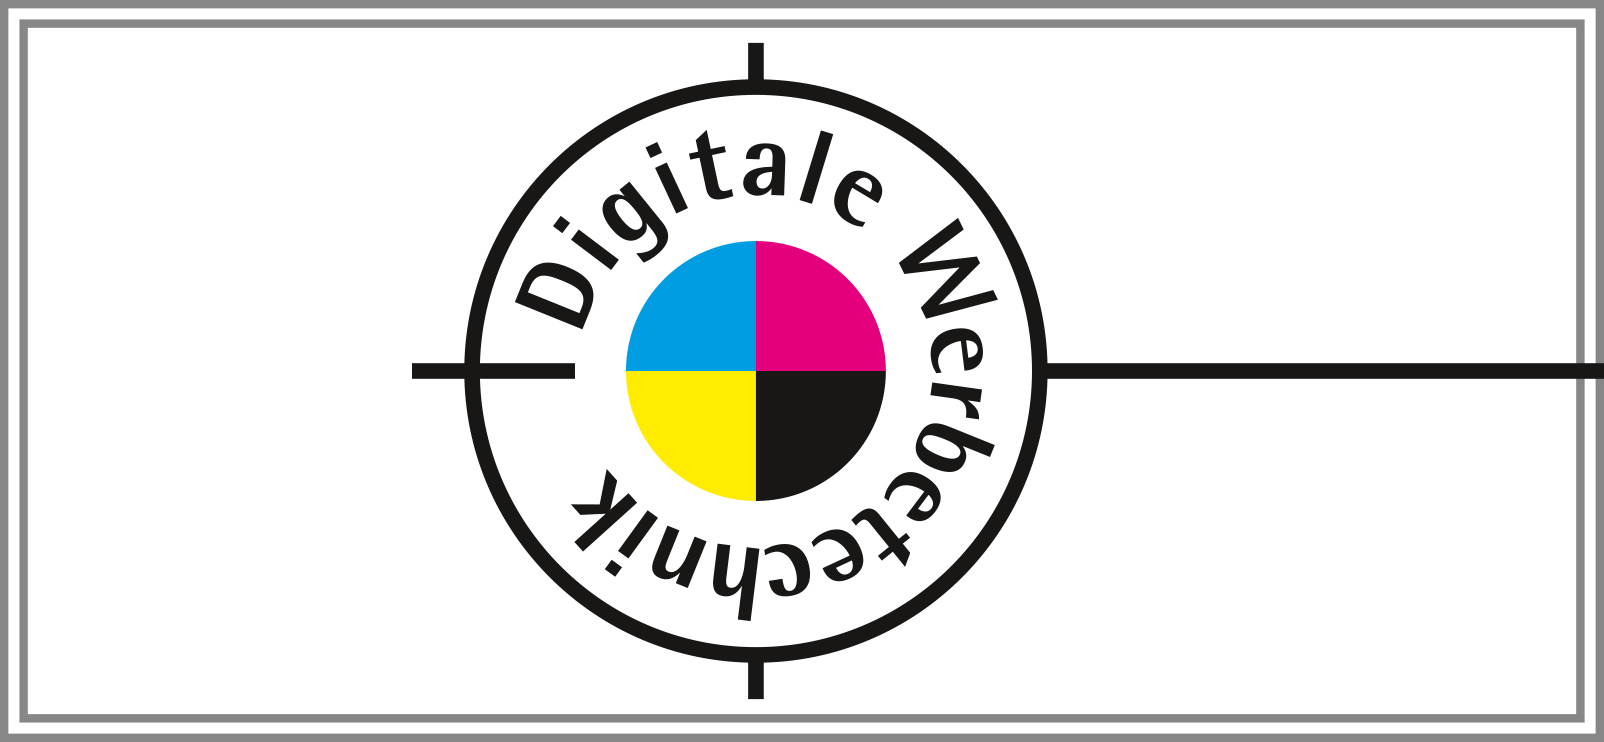 (c) Digitale-werbetechnik.de